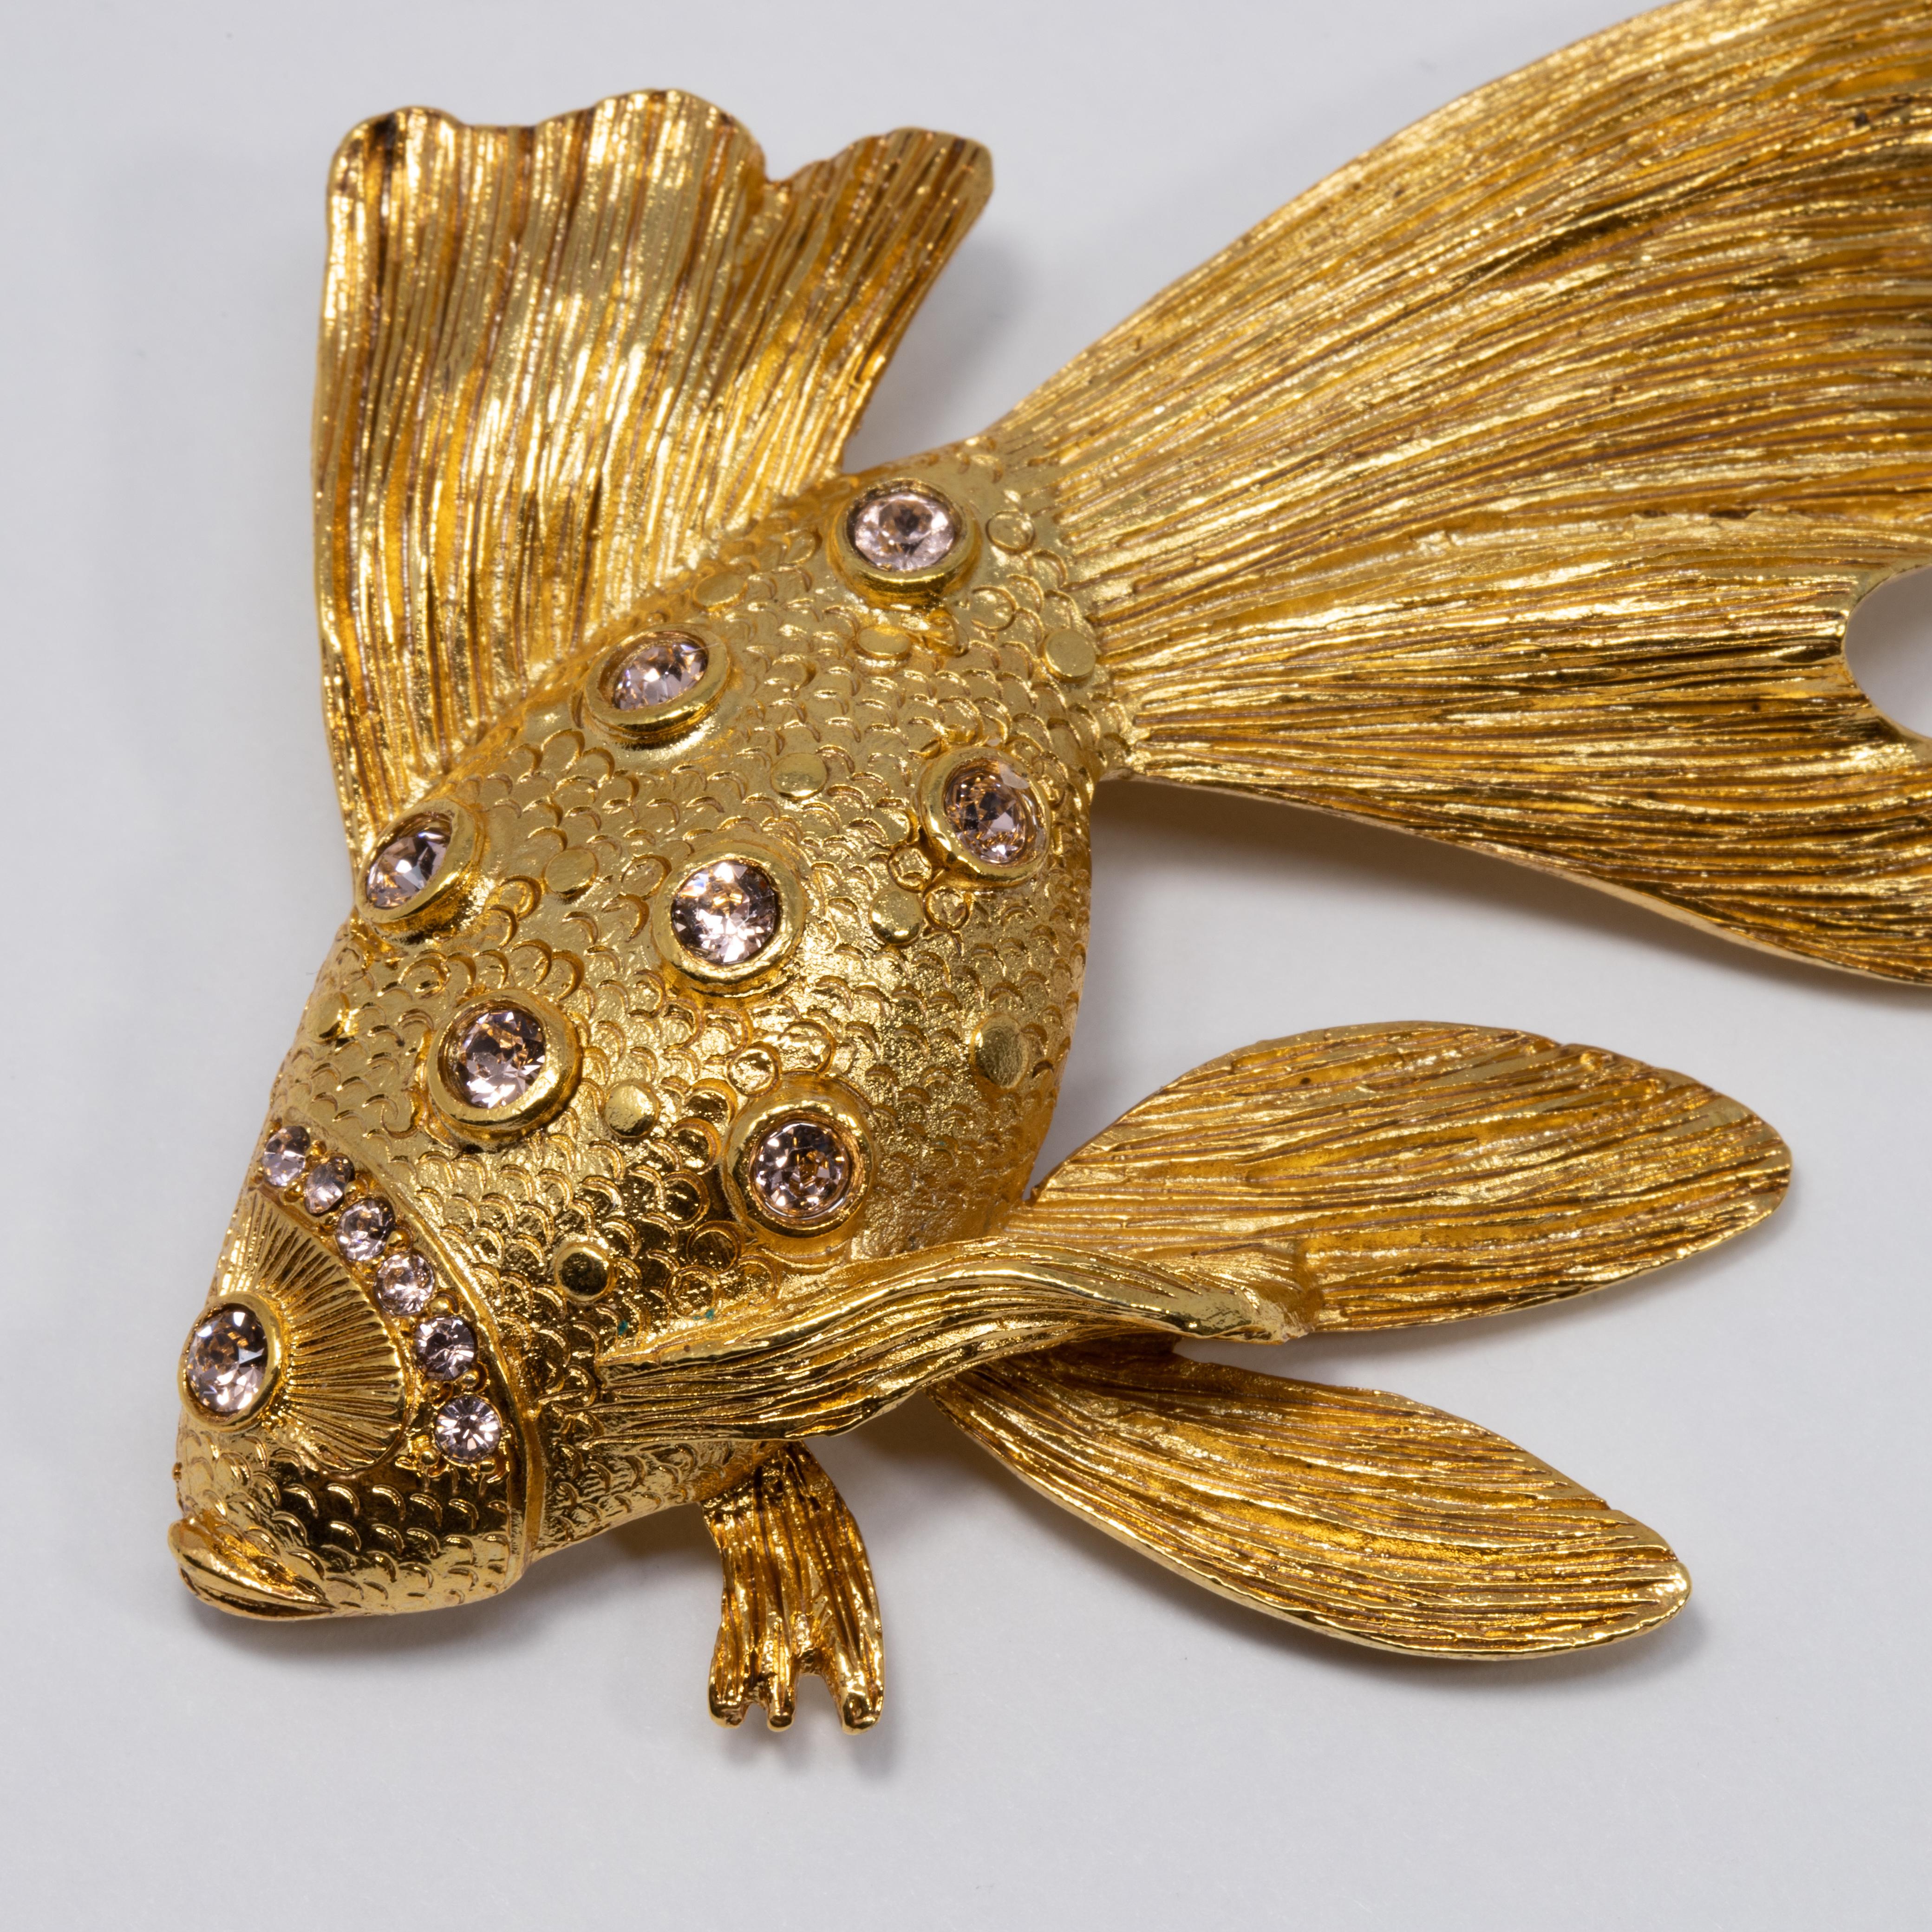 Perfectionnez votre look avec cette broche poisson en métal doré sertie de cristaux Swarovski étincelants. Pour une esthétique marine parfaite !

Poinçons : Oscar de la Renta, Made in USA